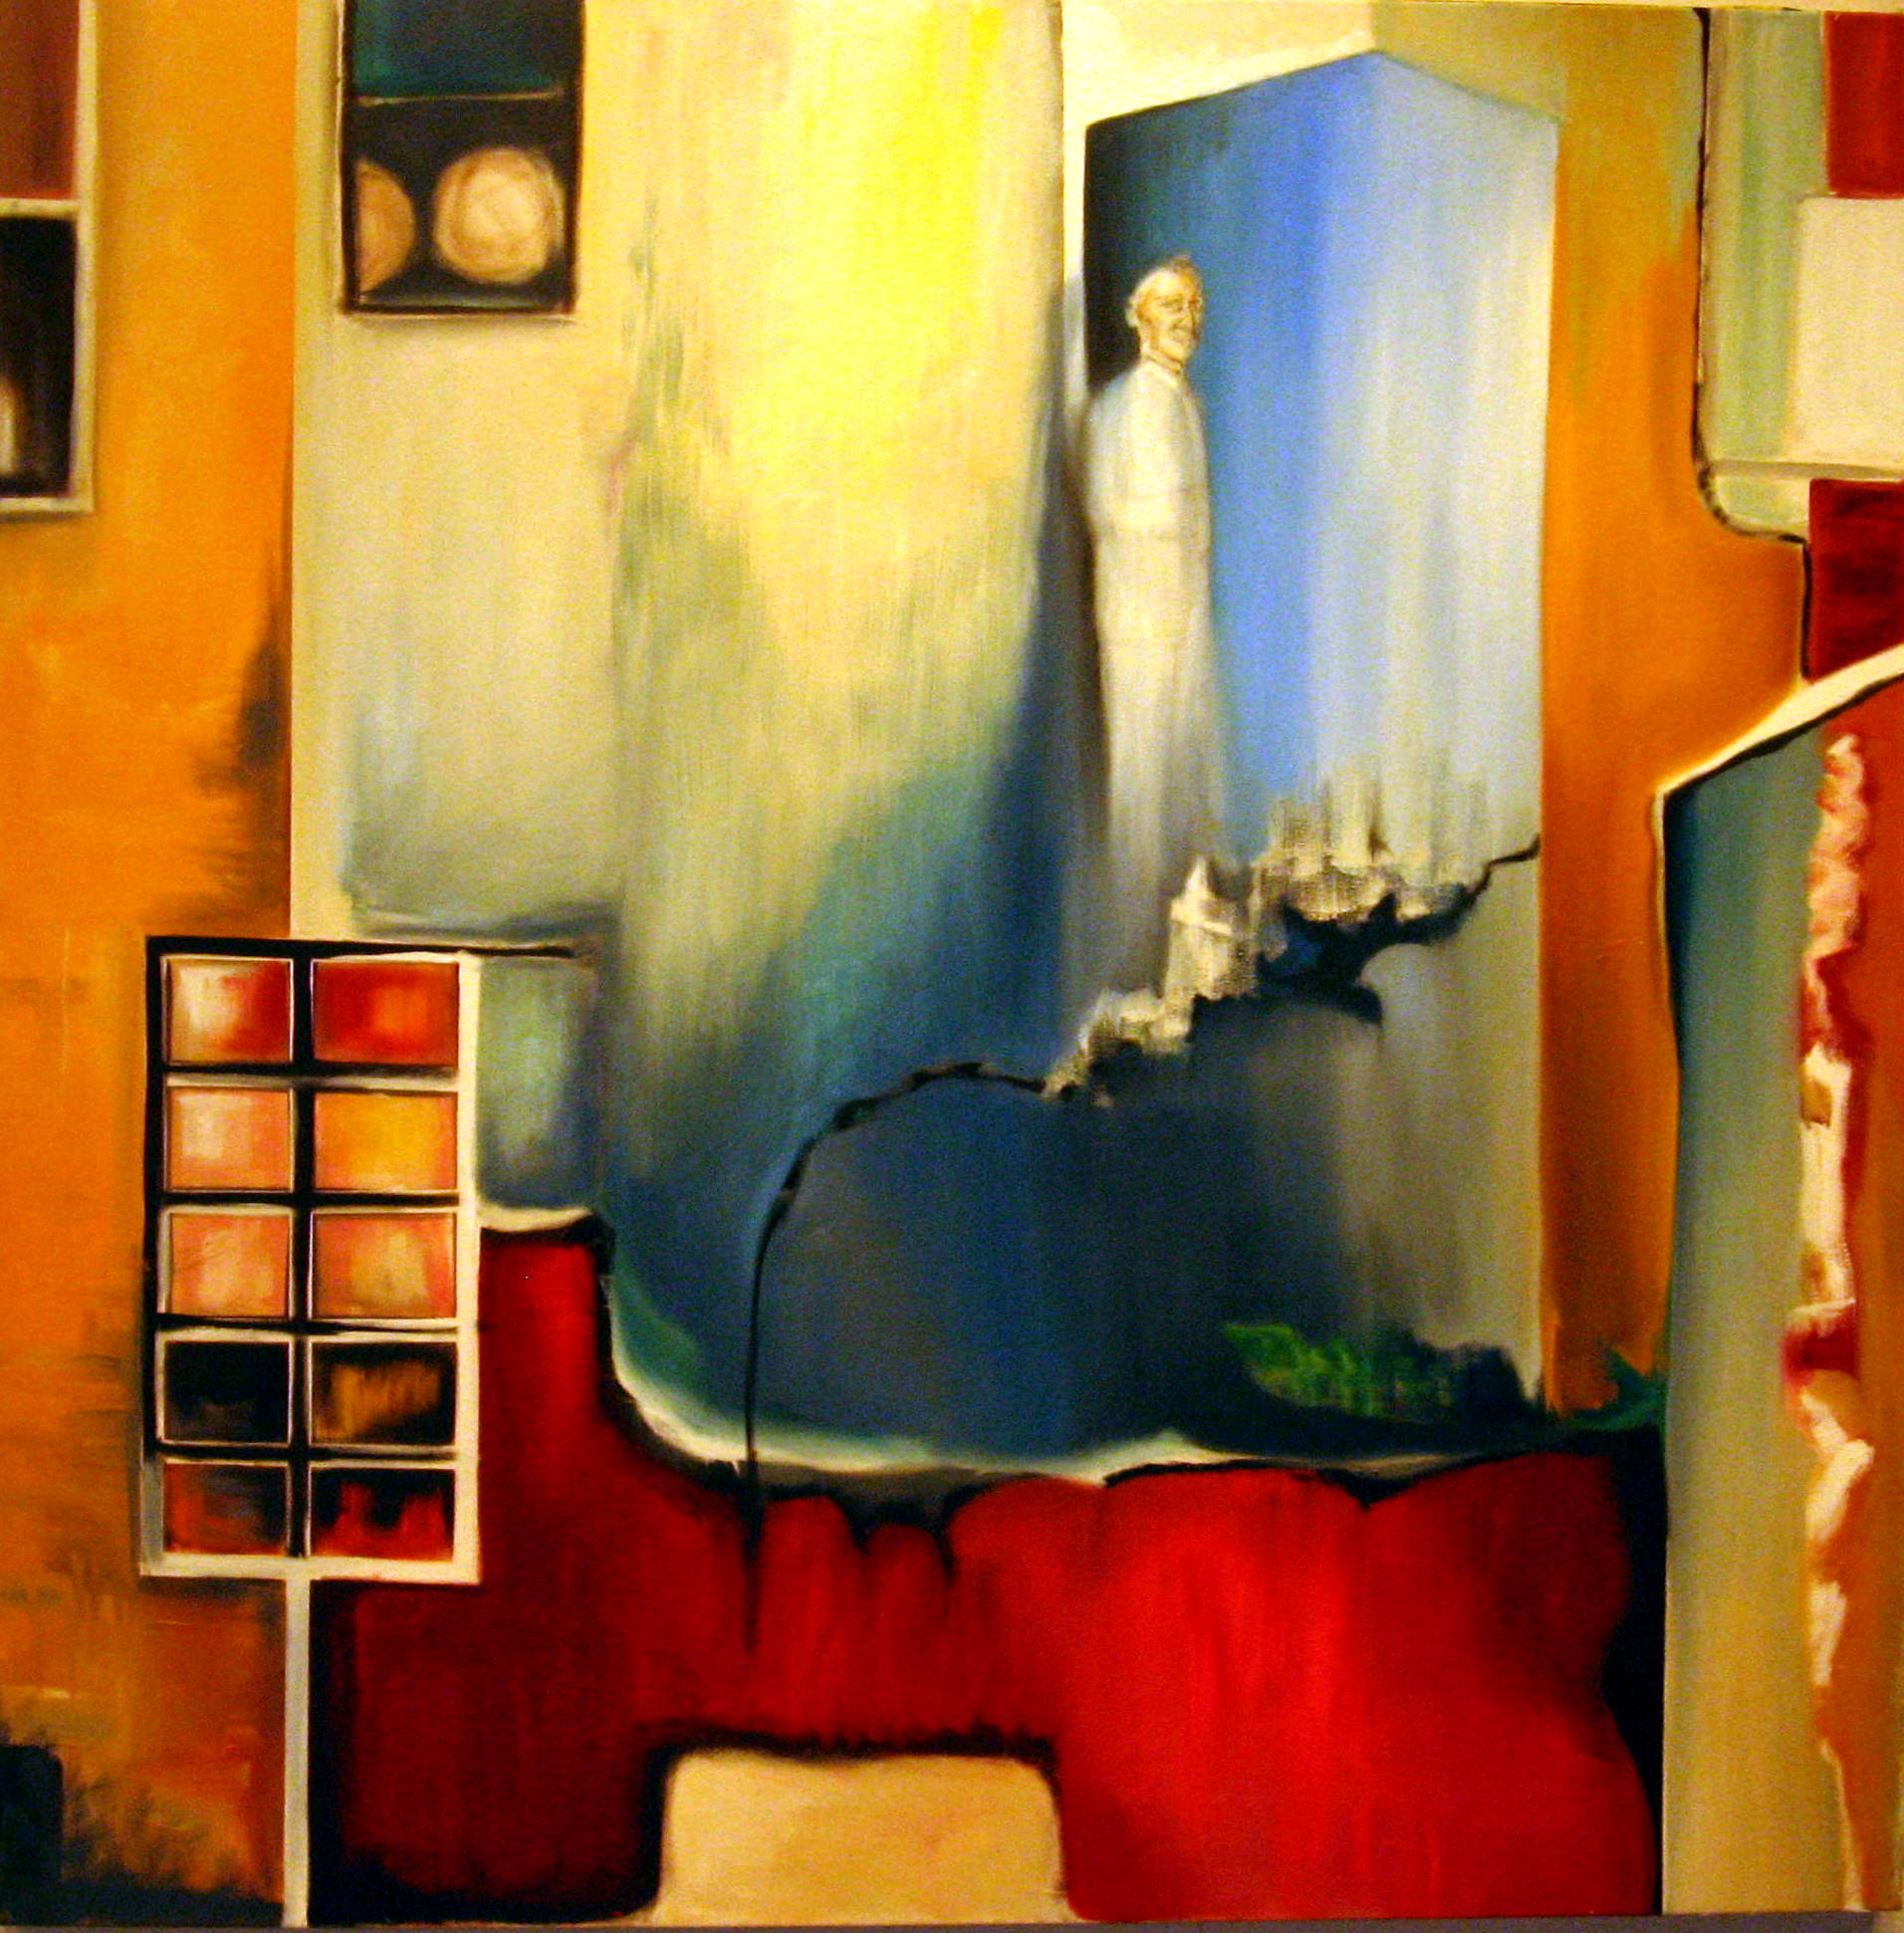 Sandra Vucicevic, THE GATE, 2010, Oil on canvas, 60 x 60